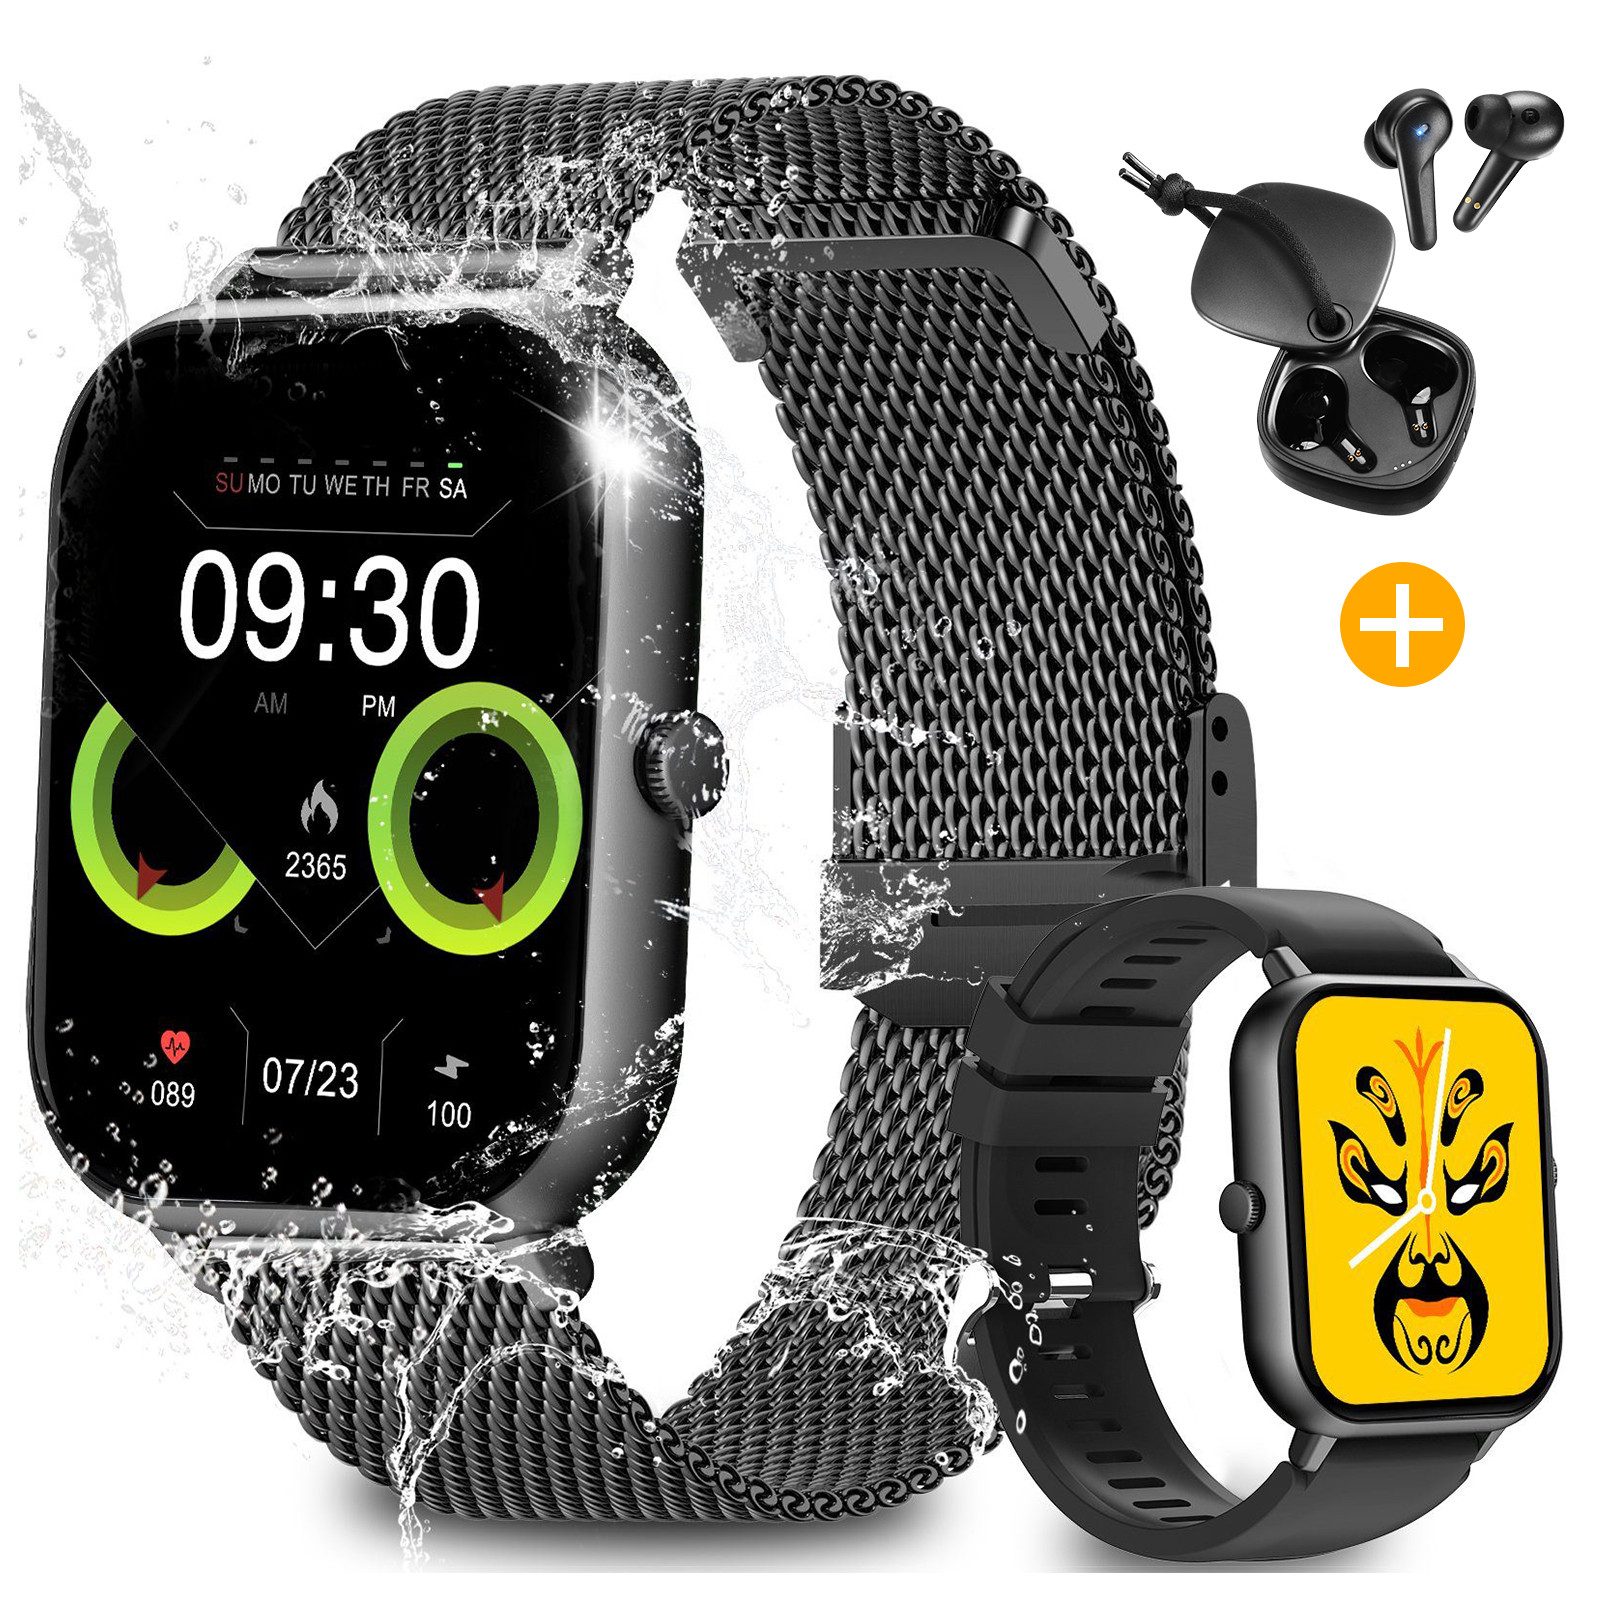 Yuede Smartwatch, Fitness Tracker uhr mit Anruffunktion für Damen und Herren Smartwatch (Quadratischer 1,85%27%27-Voll-Touch-Farbdisplay Zoll Zoll) Bluetooth Kopfhörer mit Aktive Rauschunterdrückung(ANC) Combo Fitnessuhr mit Anruffunktion, Gesundheits-Smartwatch mit Blutsauerstoff, Blutdruckmessung, Herzfrequenz, Schlafqualität, Schrittzähler etc., IP67 wasserdichte Sportuhr mit mehr als 50 Sportmodi und Doppelriemen, für Android IOS